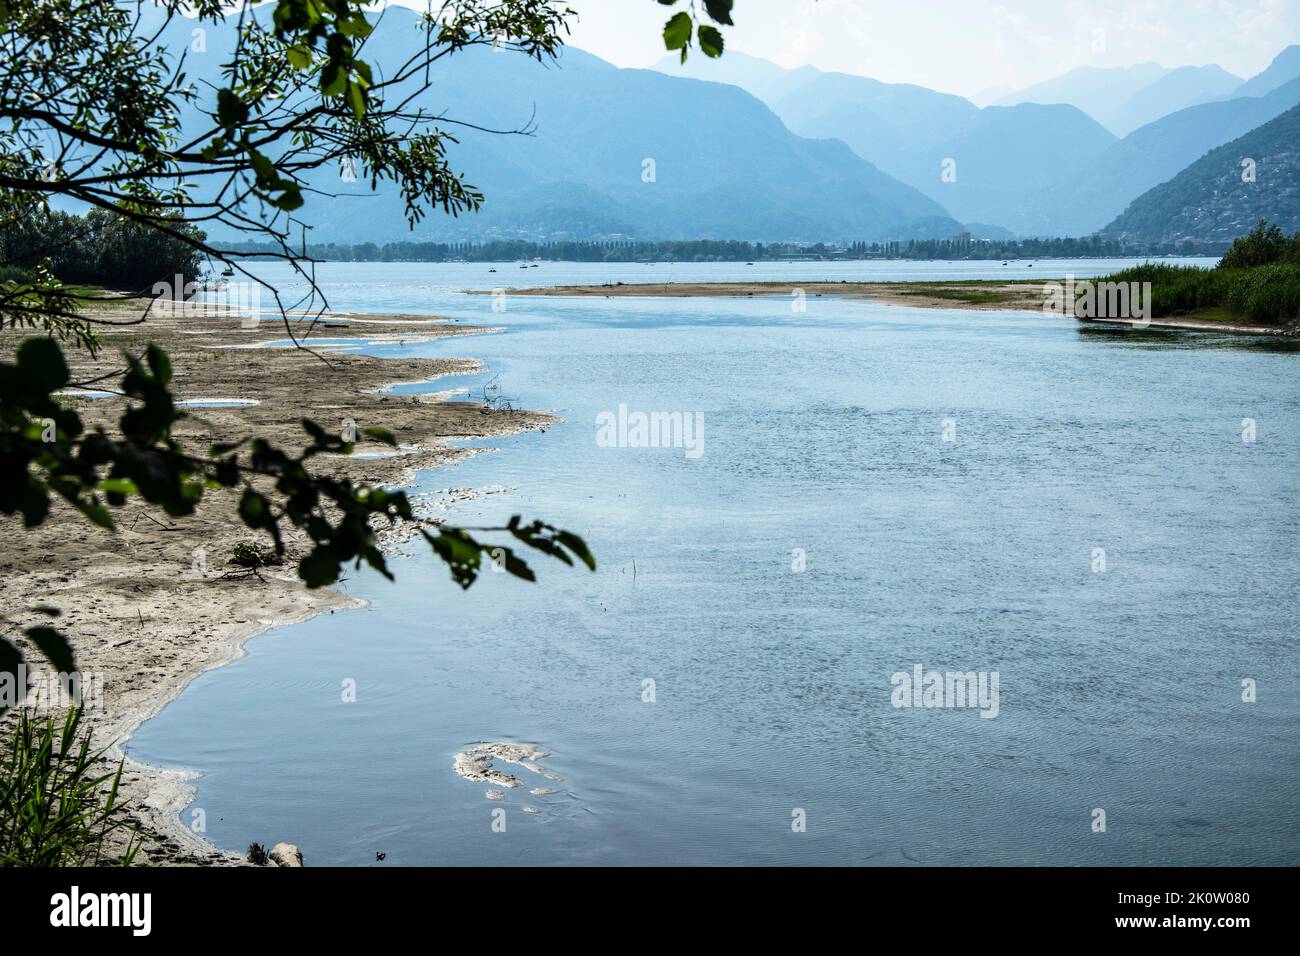 Bolle di Magadino: Die Mündung des Ticino in den Lago Maggiore Foto de stock